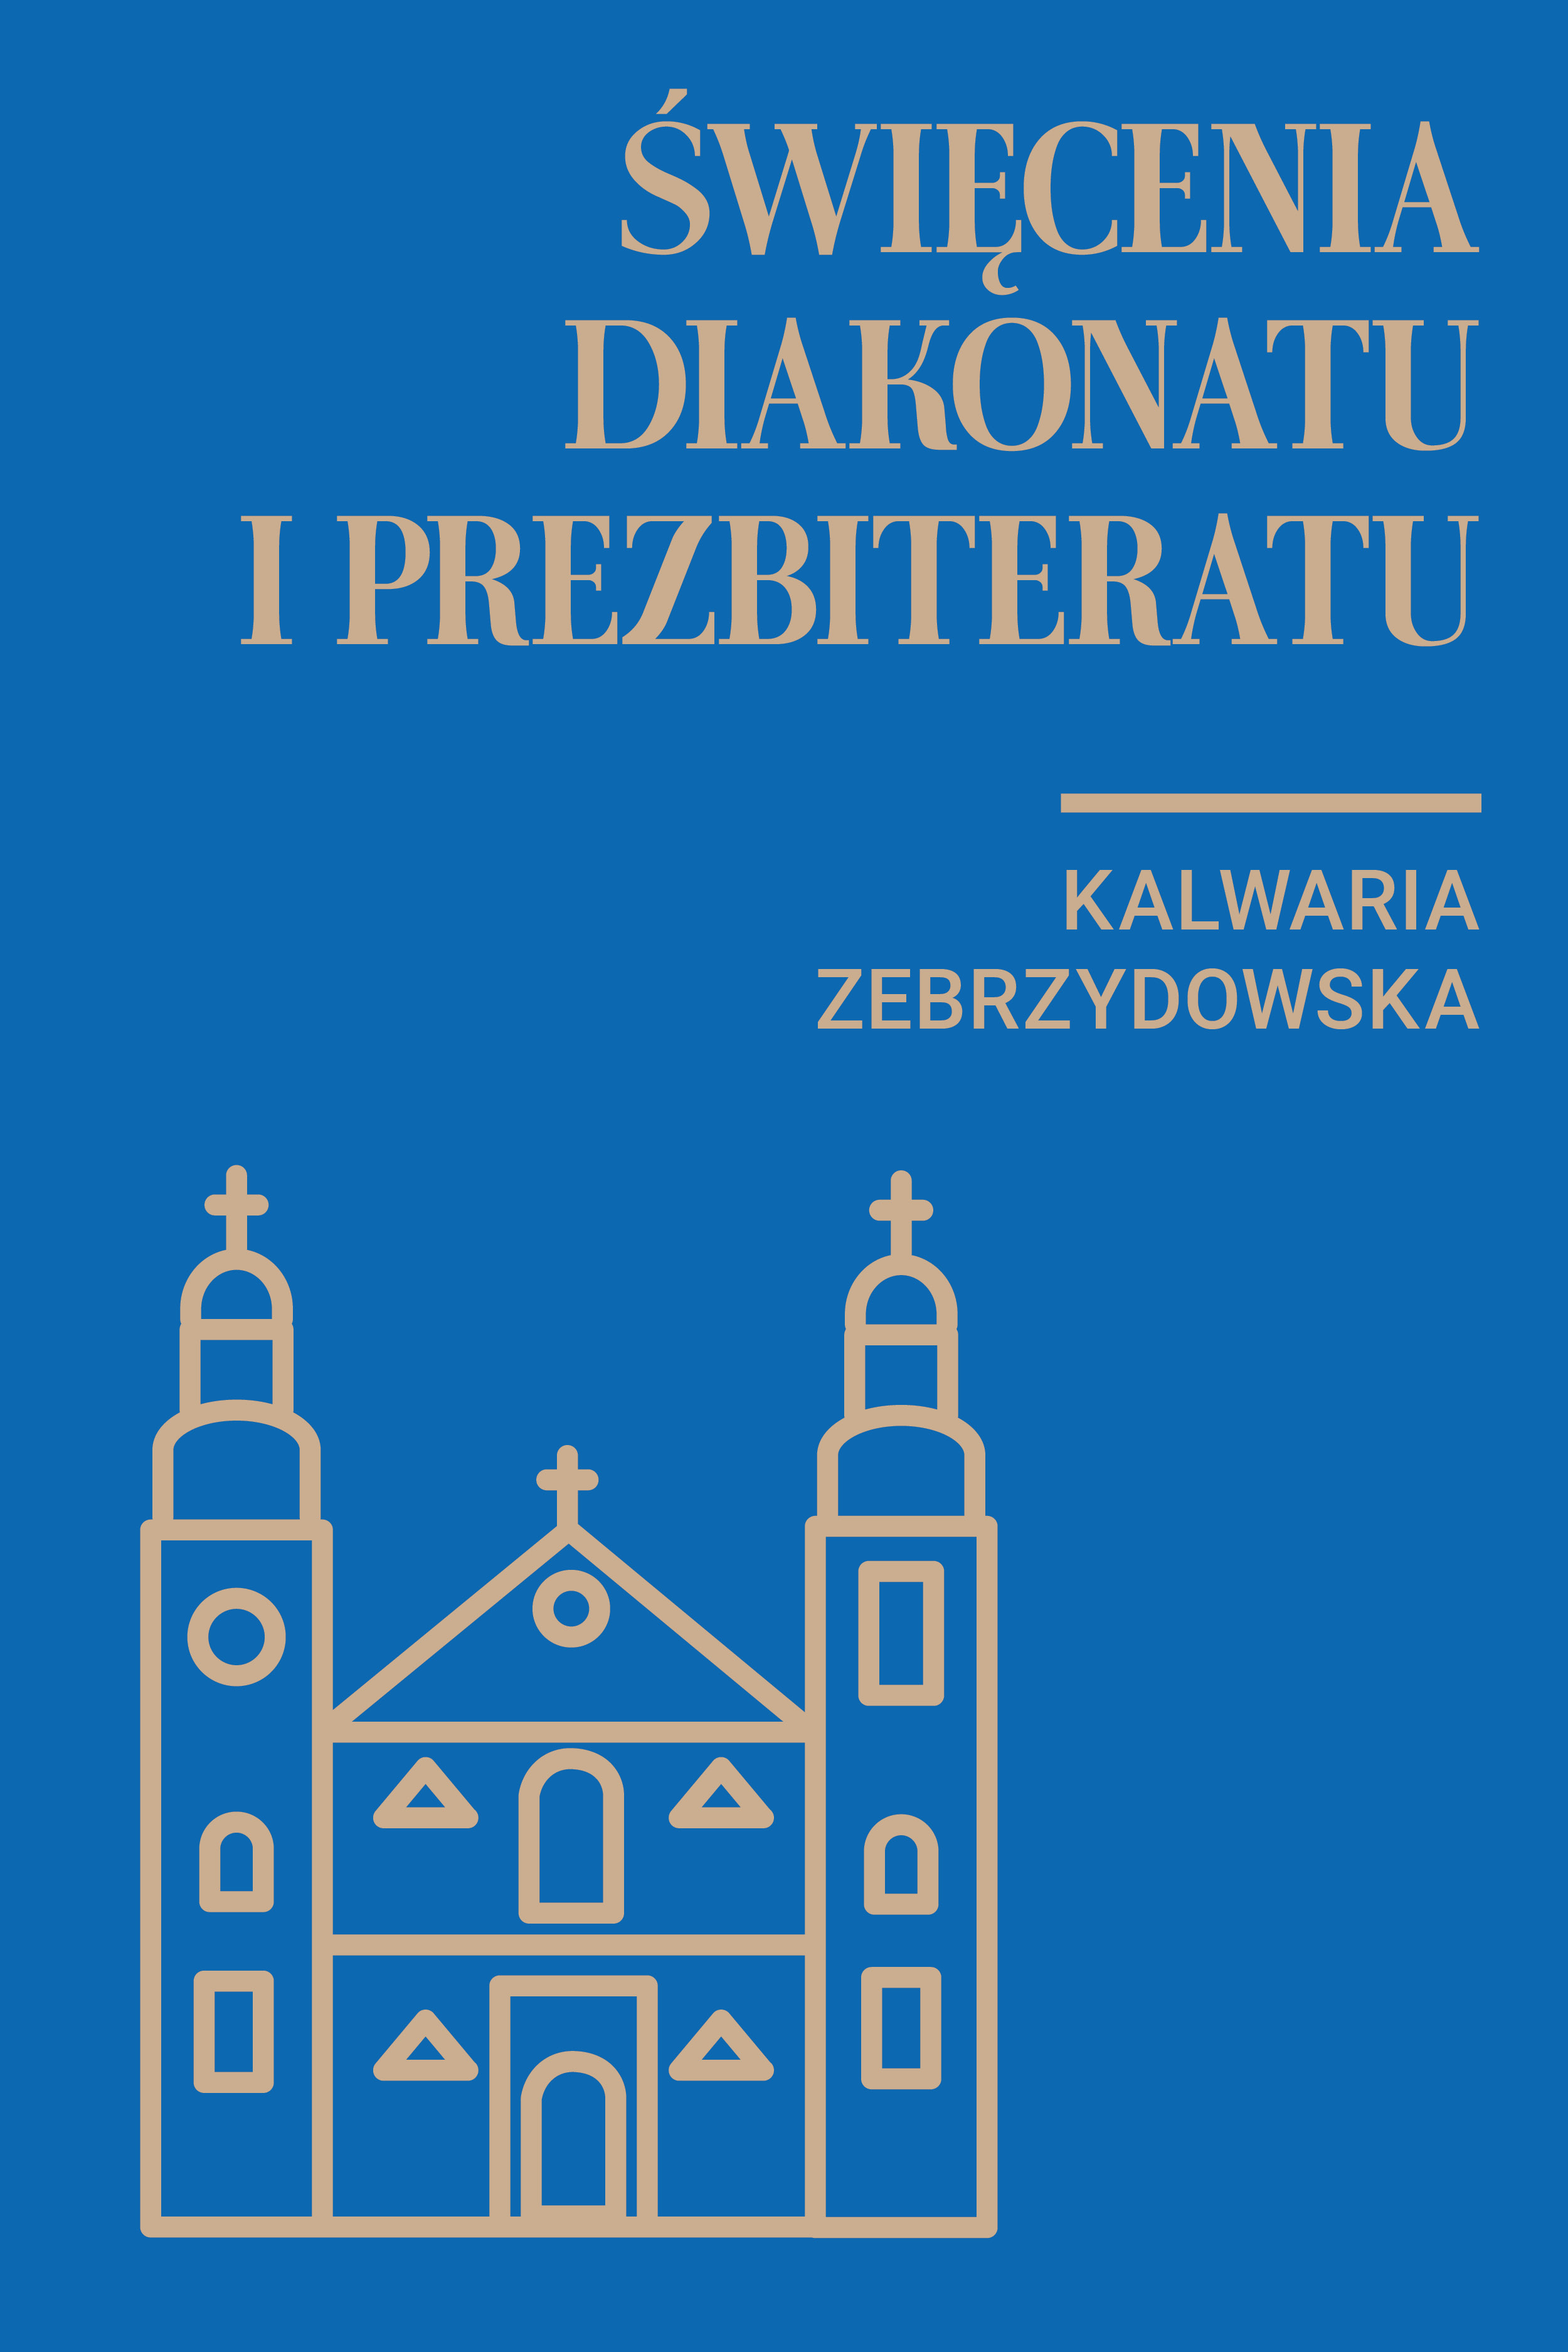 Święcenia diakonatu i prezbiteratu w Kalwarii Zebrzydowskiej